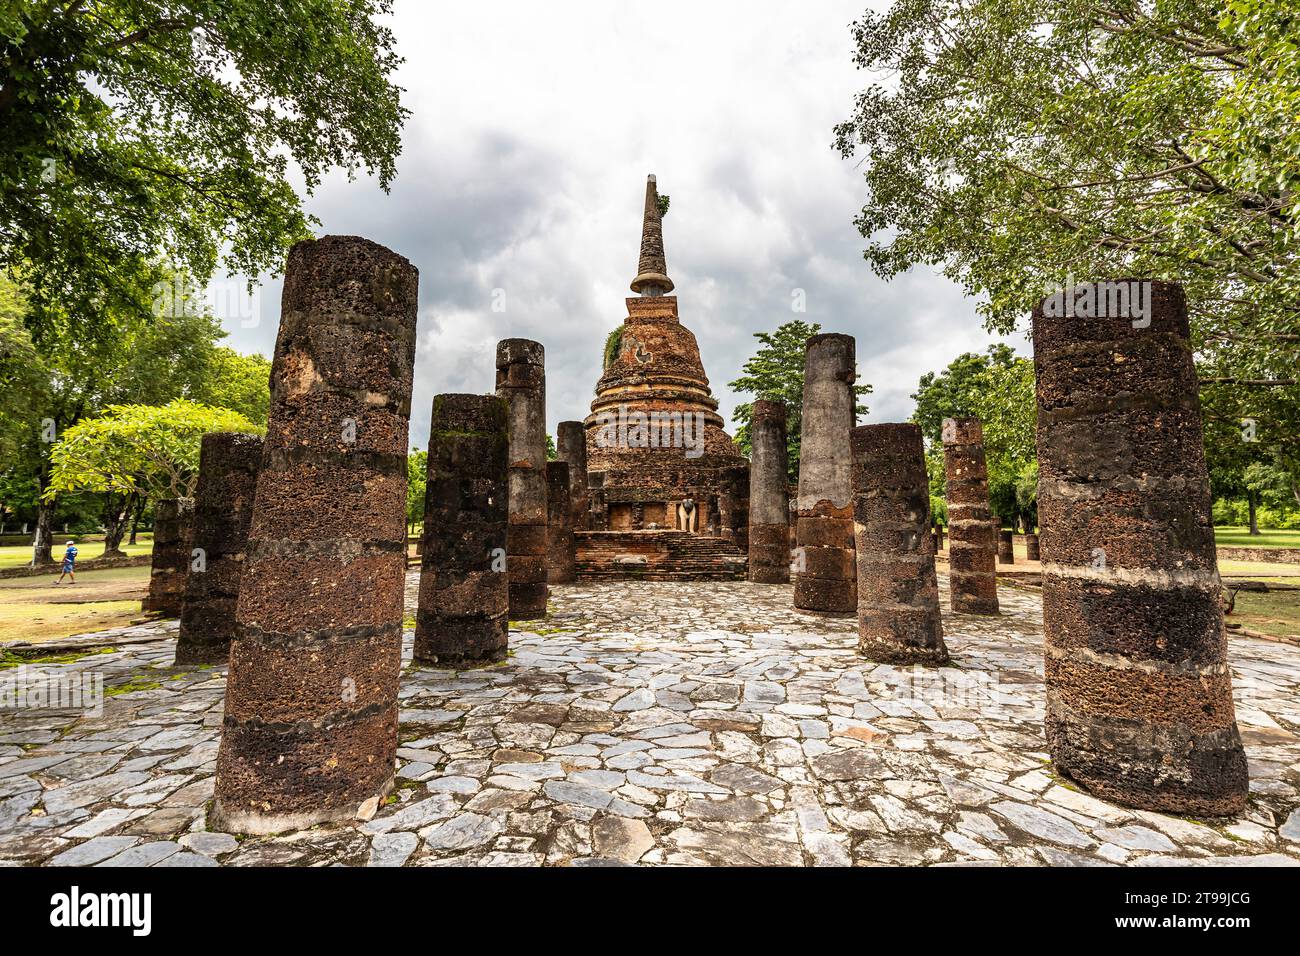 Parc historique de Sukhothai, Wat Chang LOM, statues d'éléphants à la plate-forme, Sukhothai, Thaïlande, Asie du Sud-est, Asie Banque D'Images